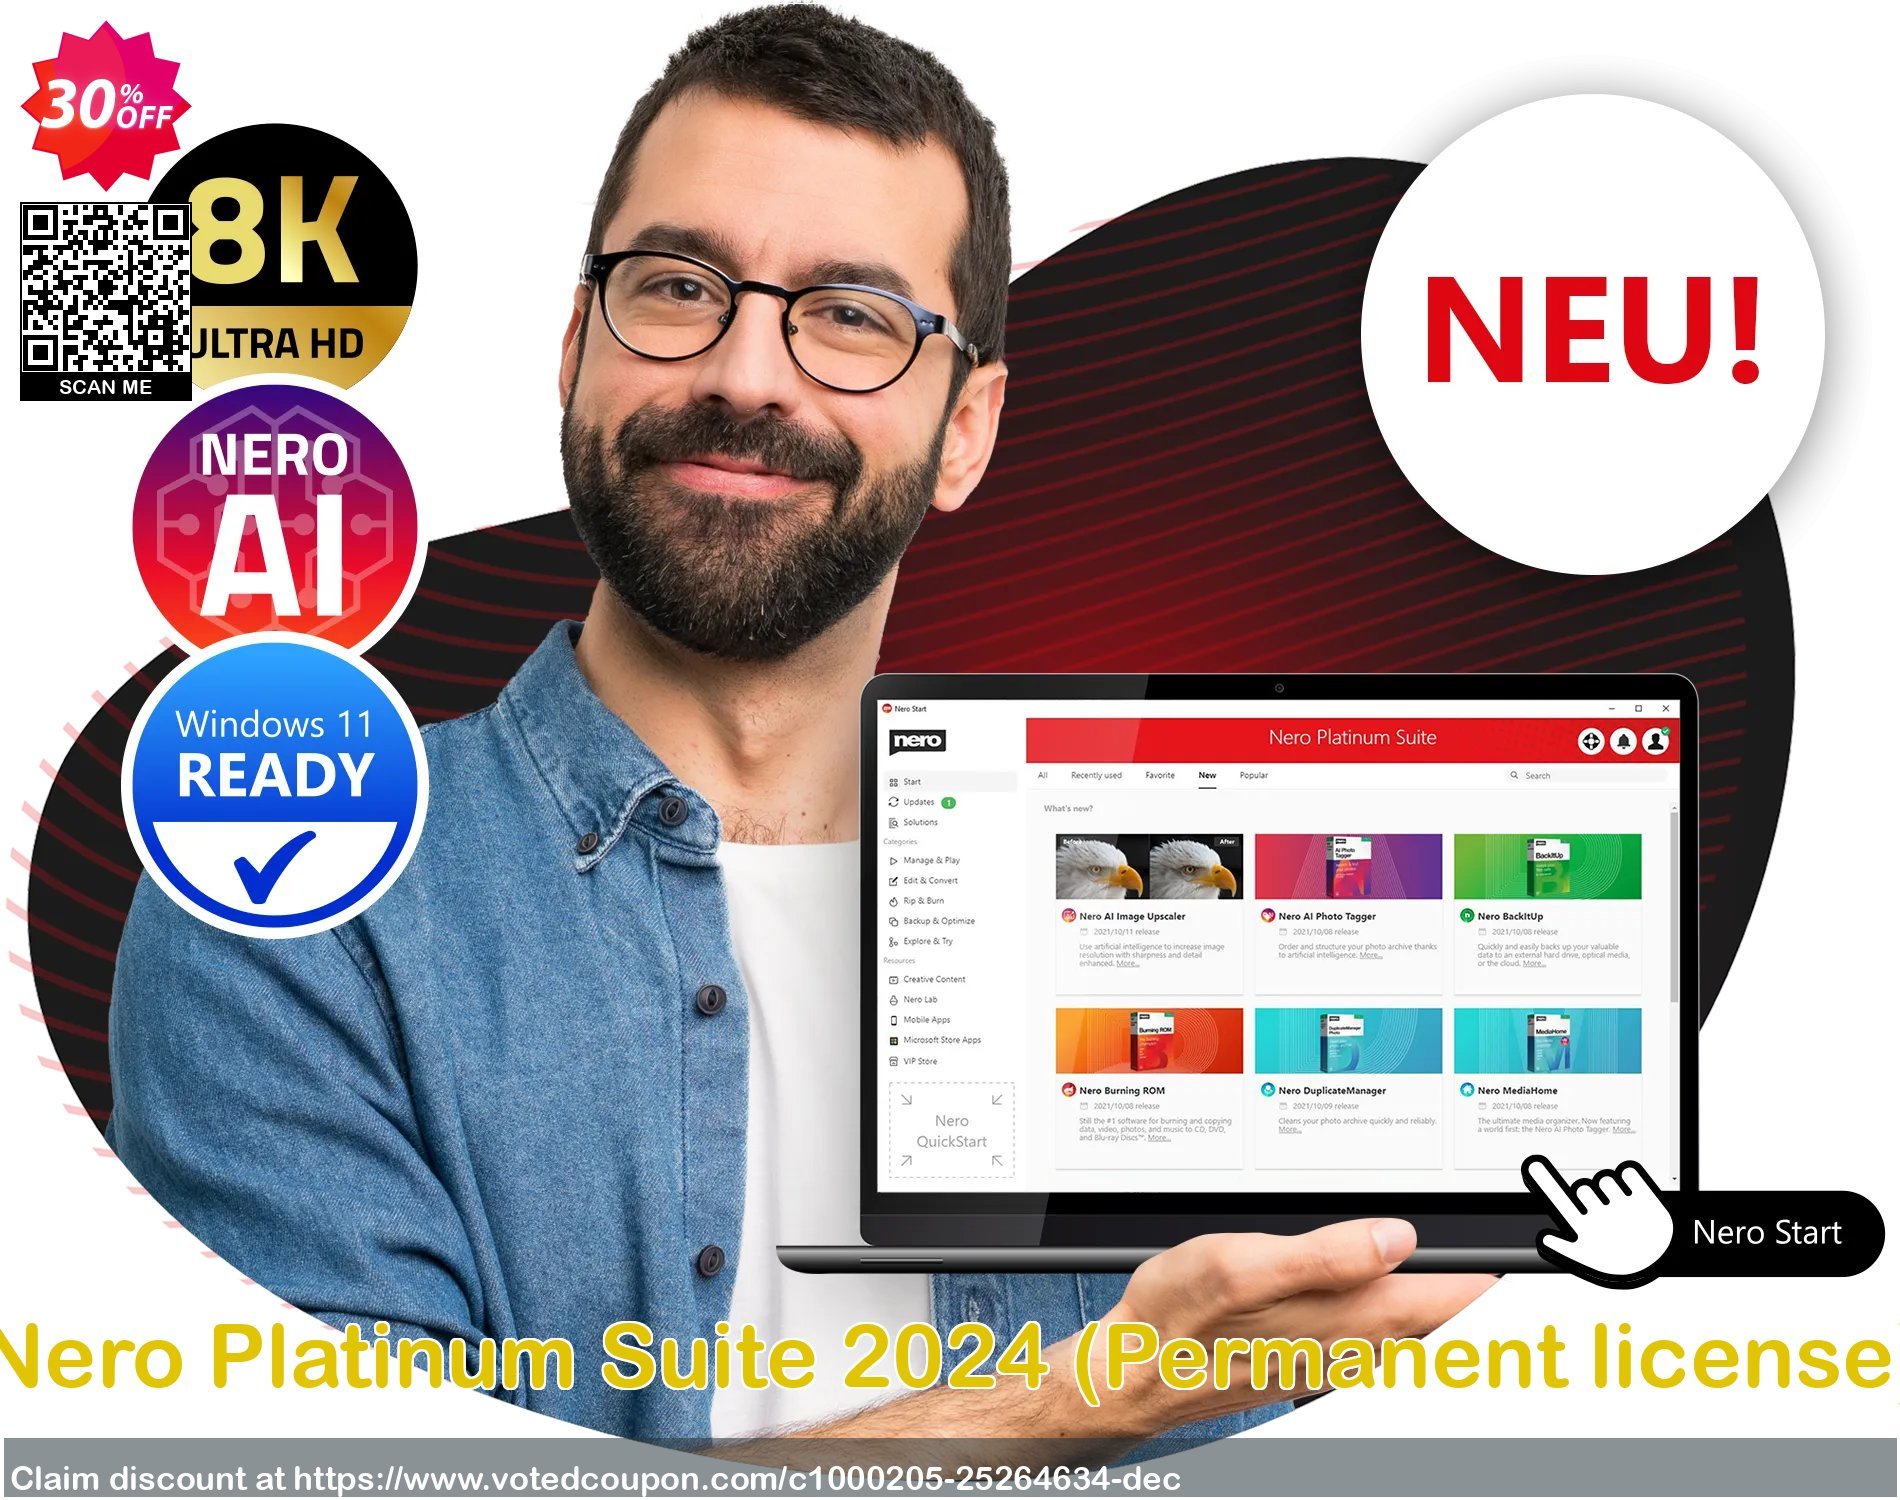 Nero Platinum Suite 2024, Permanent Plan  Coupon Code Dec 2023, 30% OFF - VotedCoupon